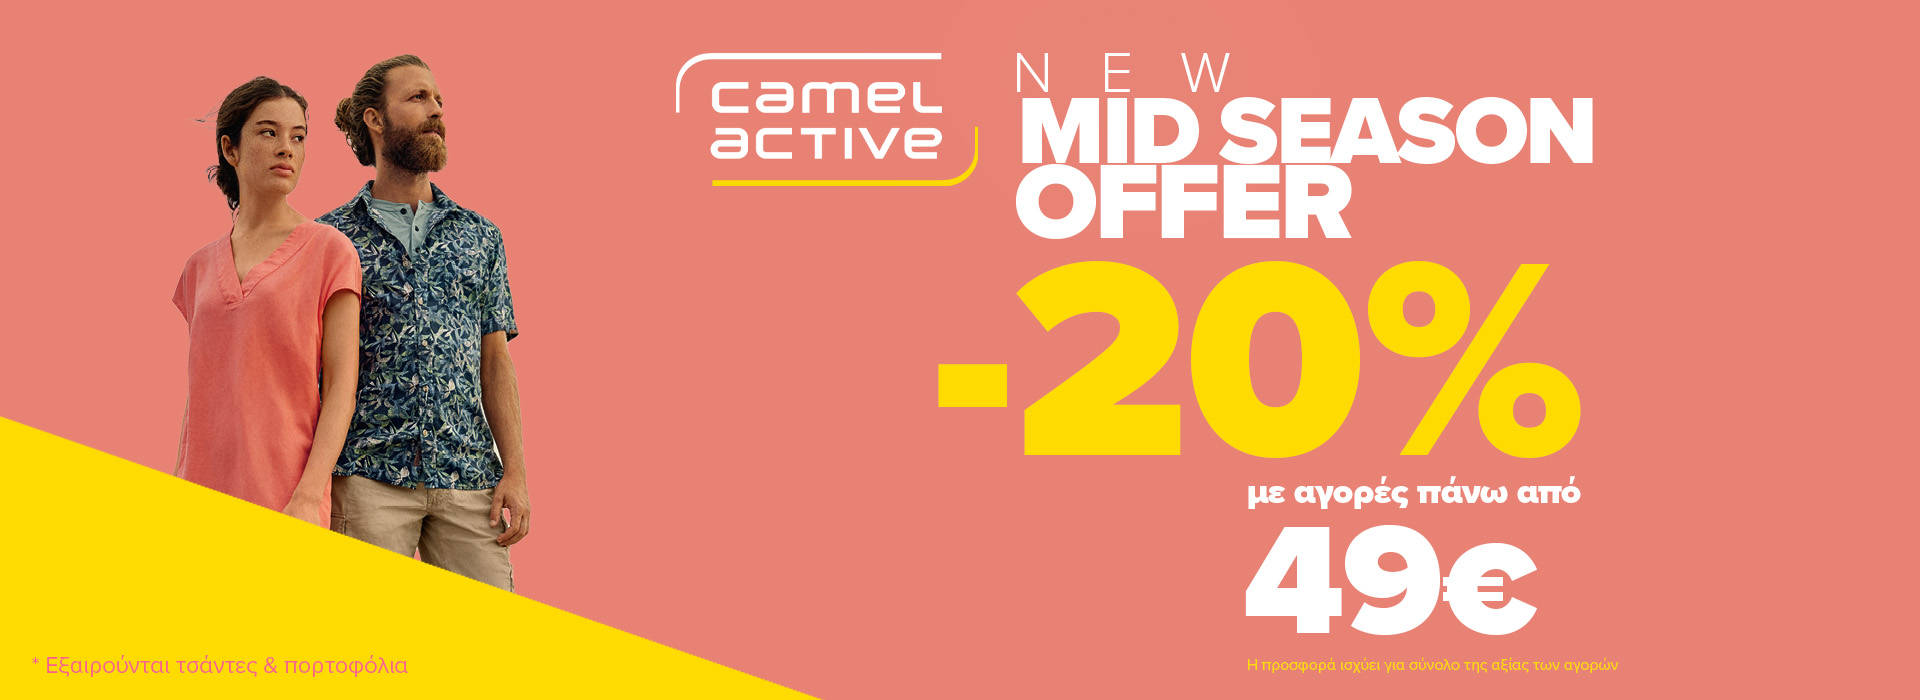 camel_active_offer